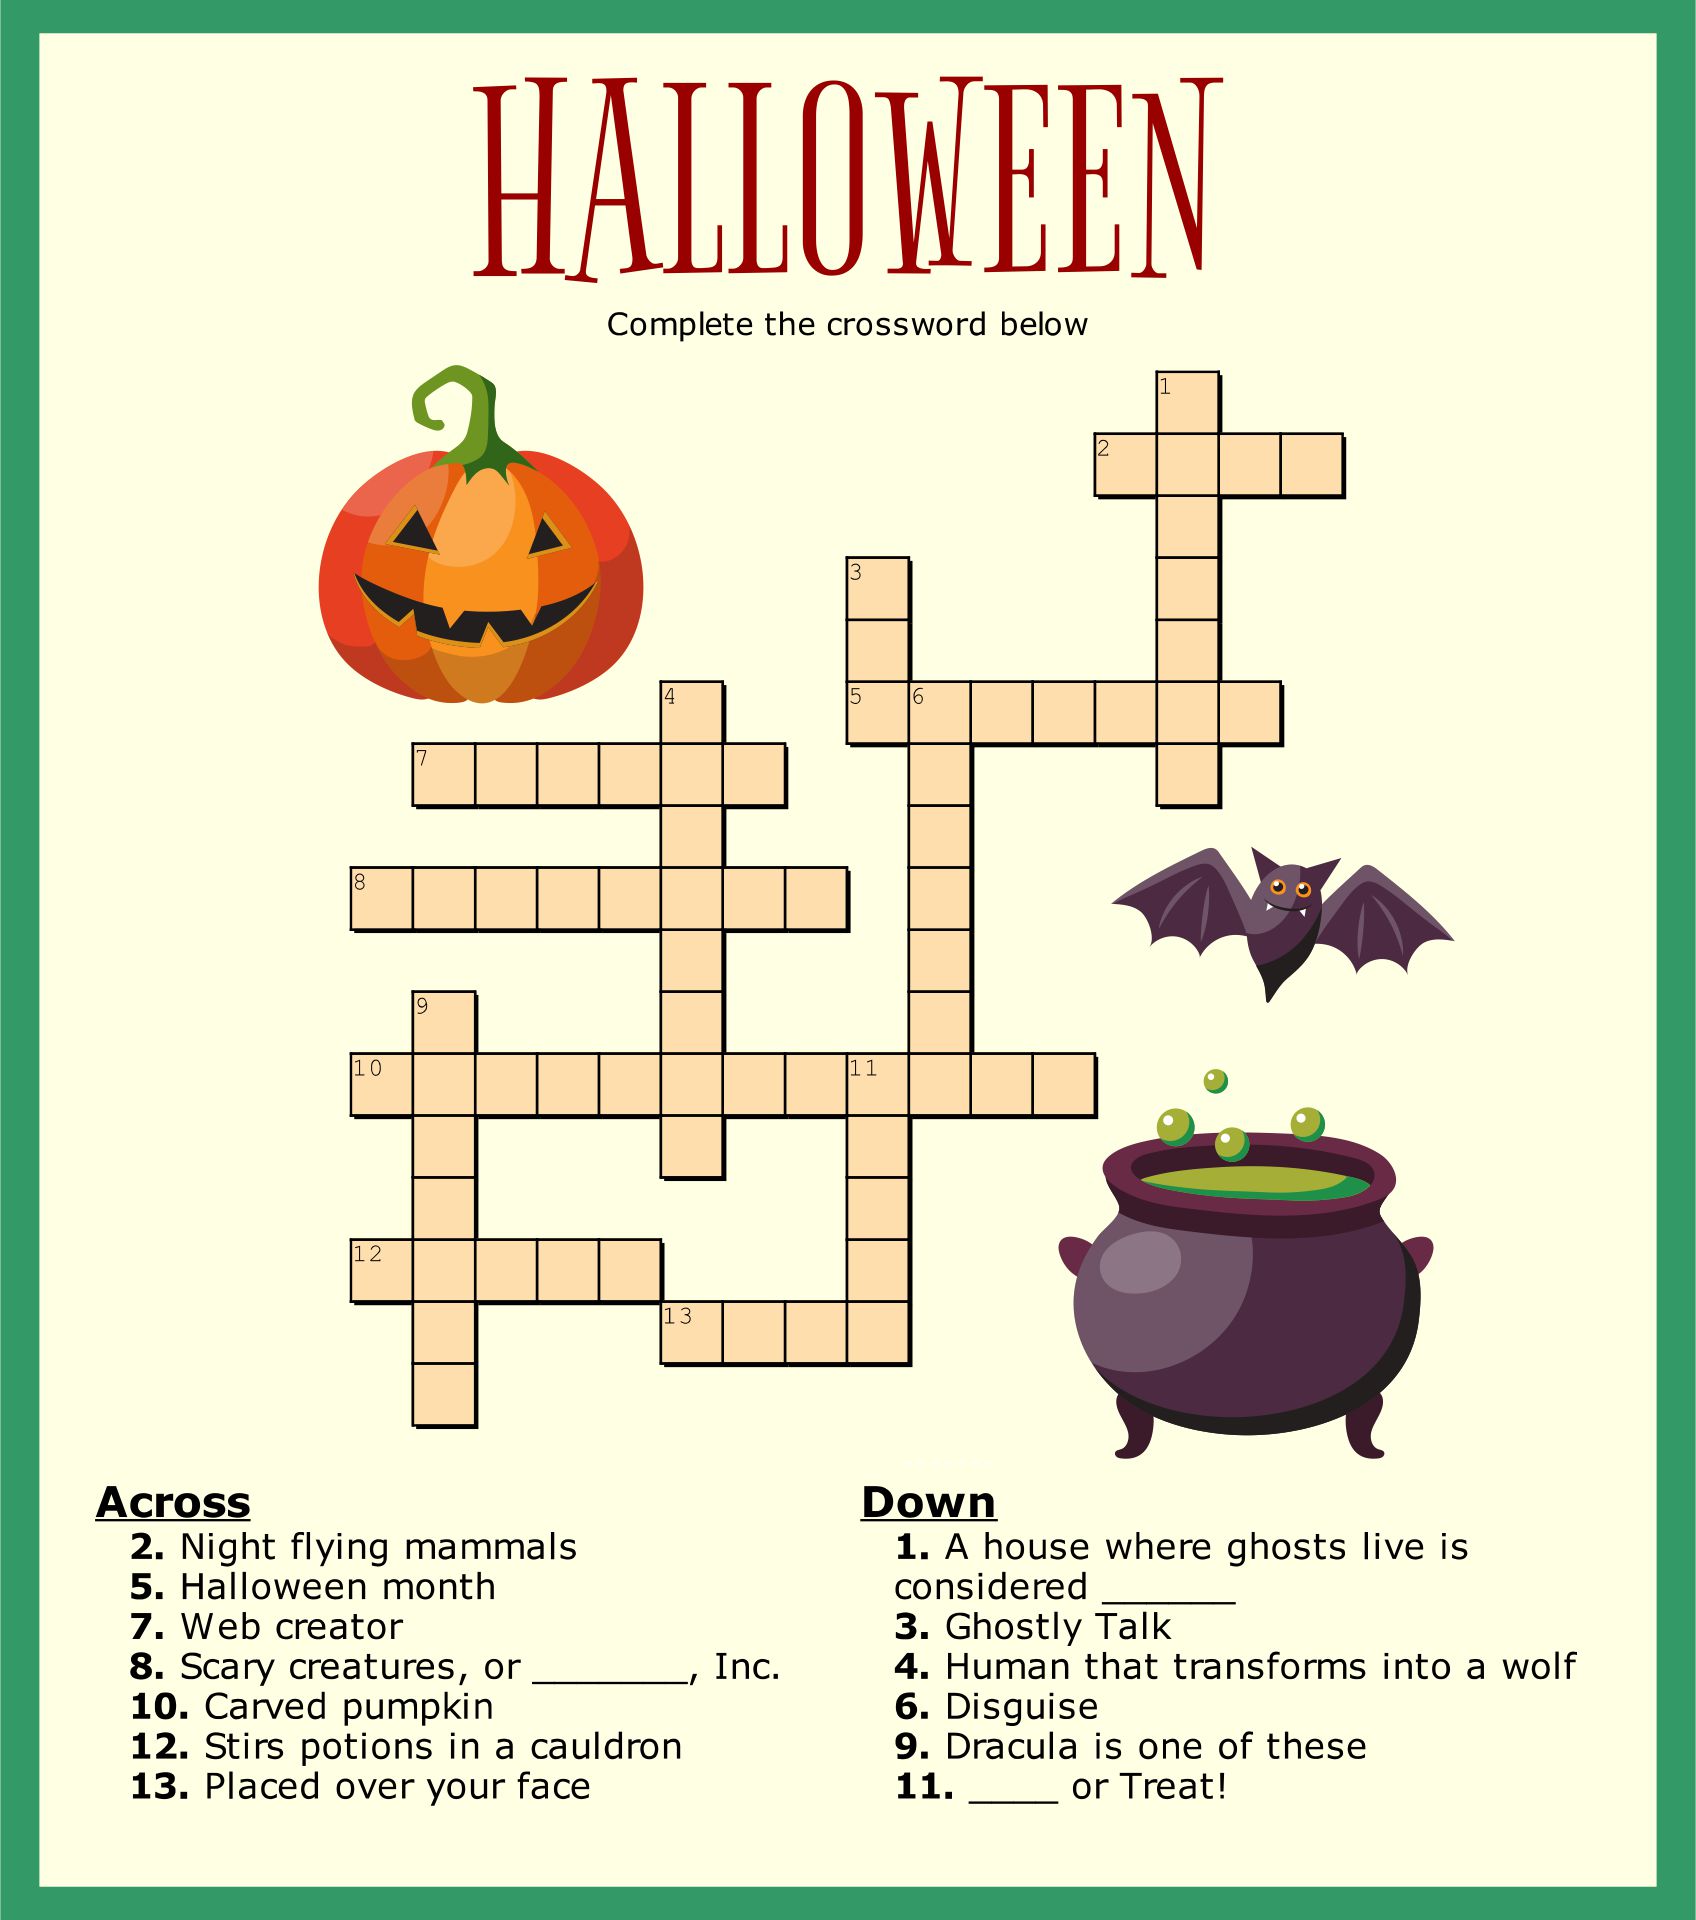 5-best-images-of-halloween-crossword-puzzles-printable-easy-halloween